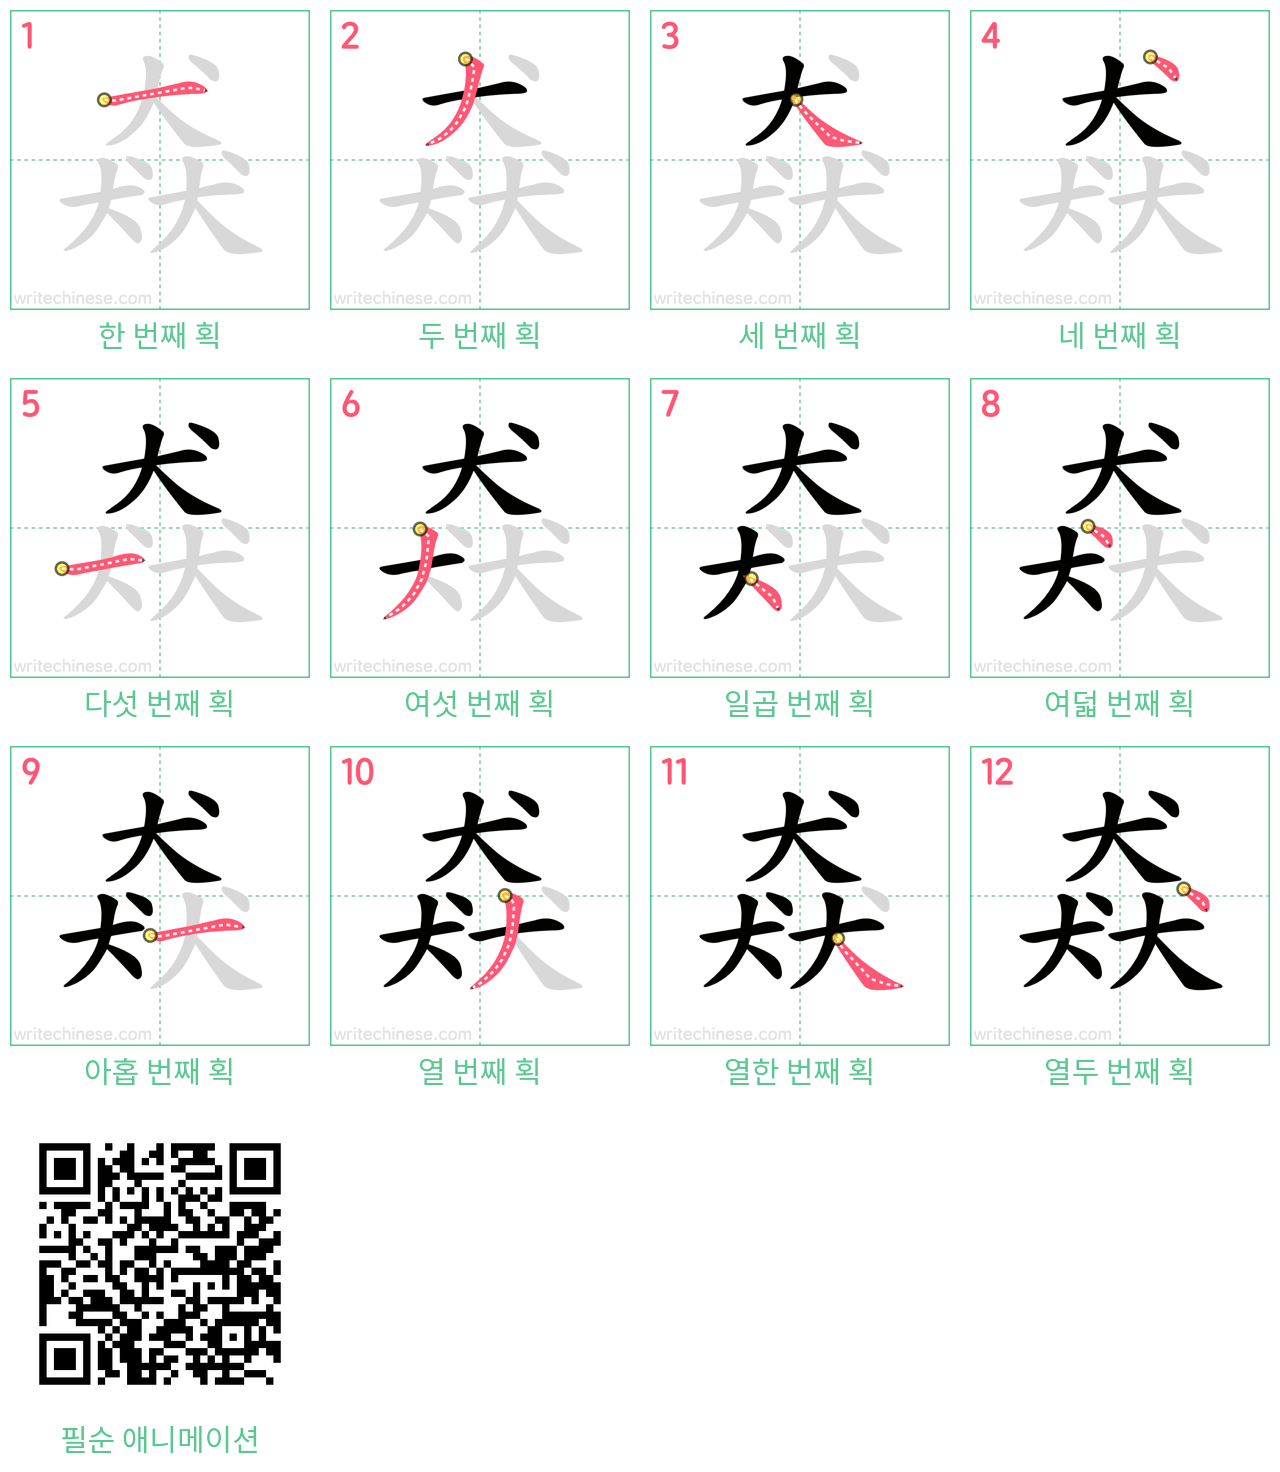 猋 step-by-step stroke order diagrams